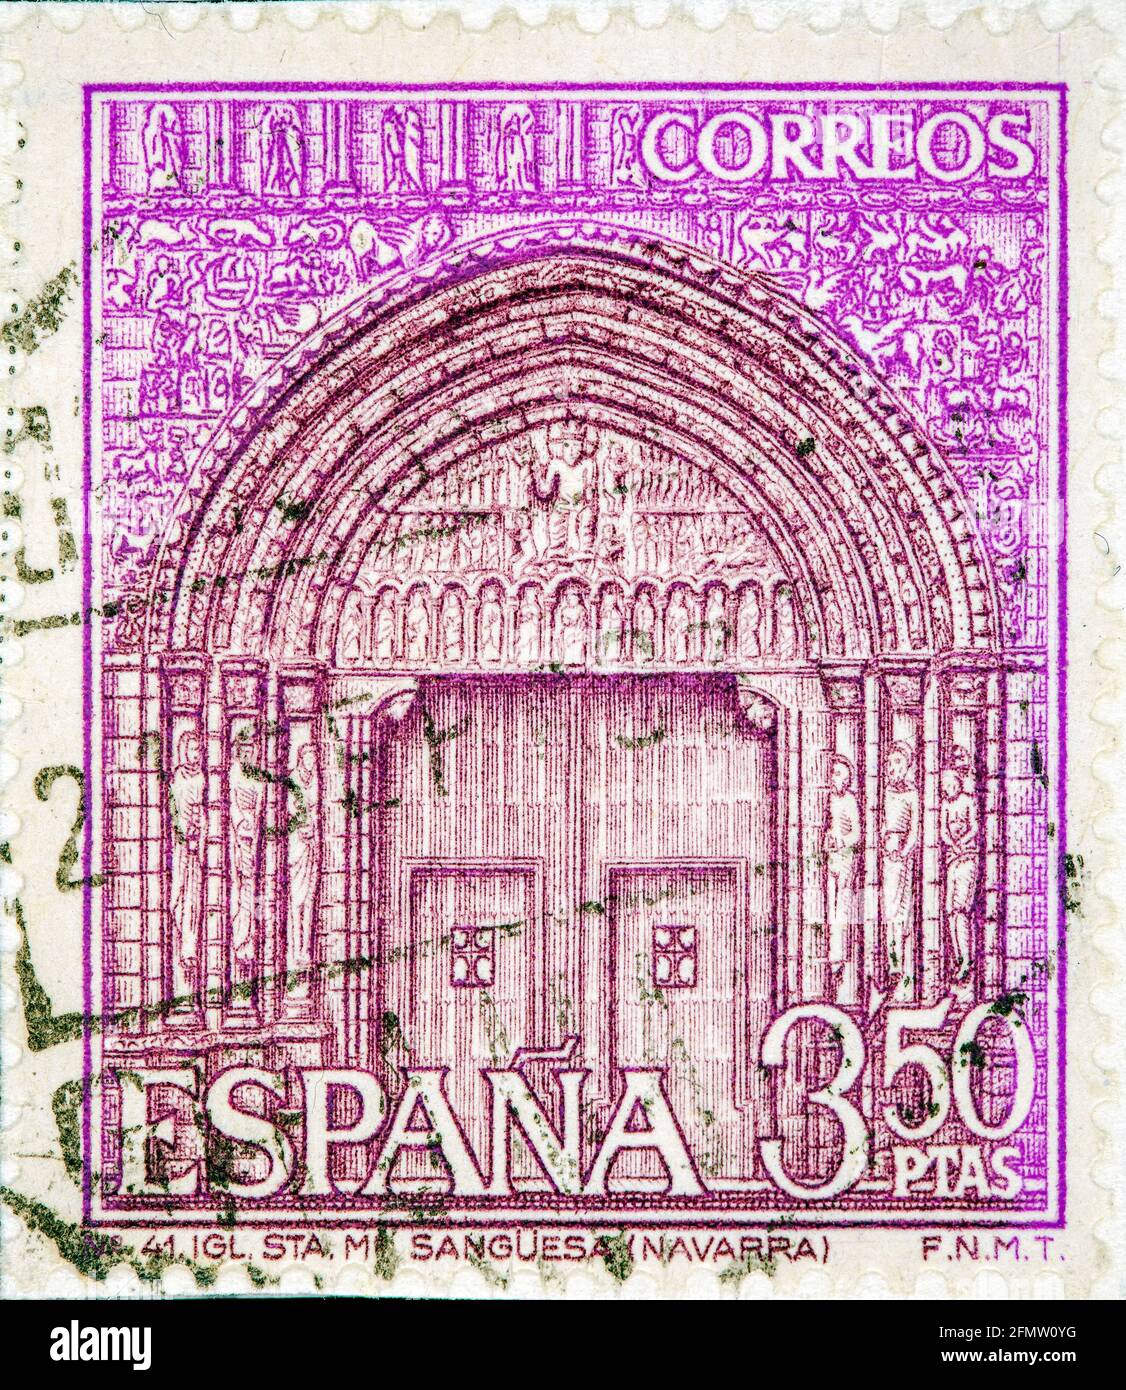 ESPAGNE, VERS 1968 : un timbre imprimé en Espagne montre le Portail de l'église Sainte Marie, Sanguesa, Navarre, Espagne, vers 1968 Banque D'Images